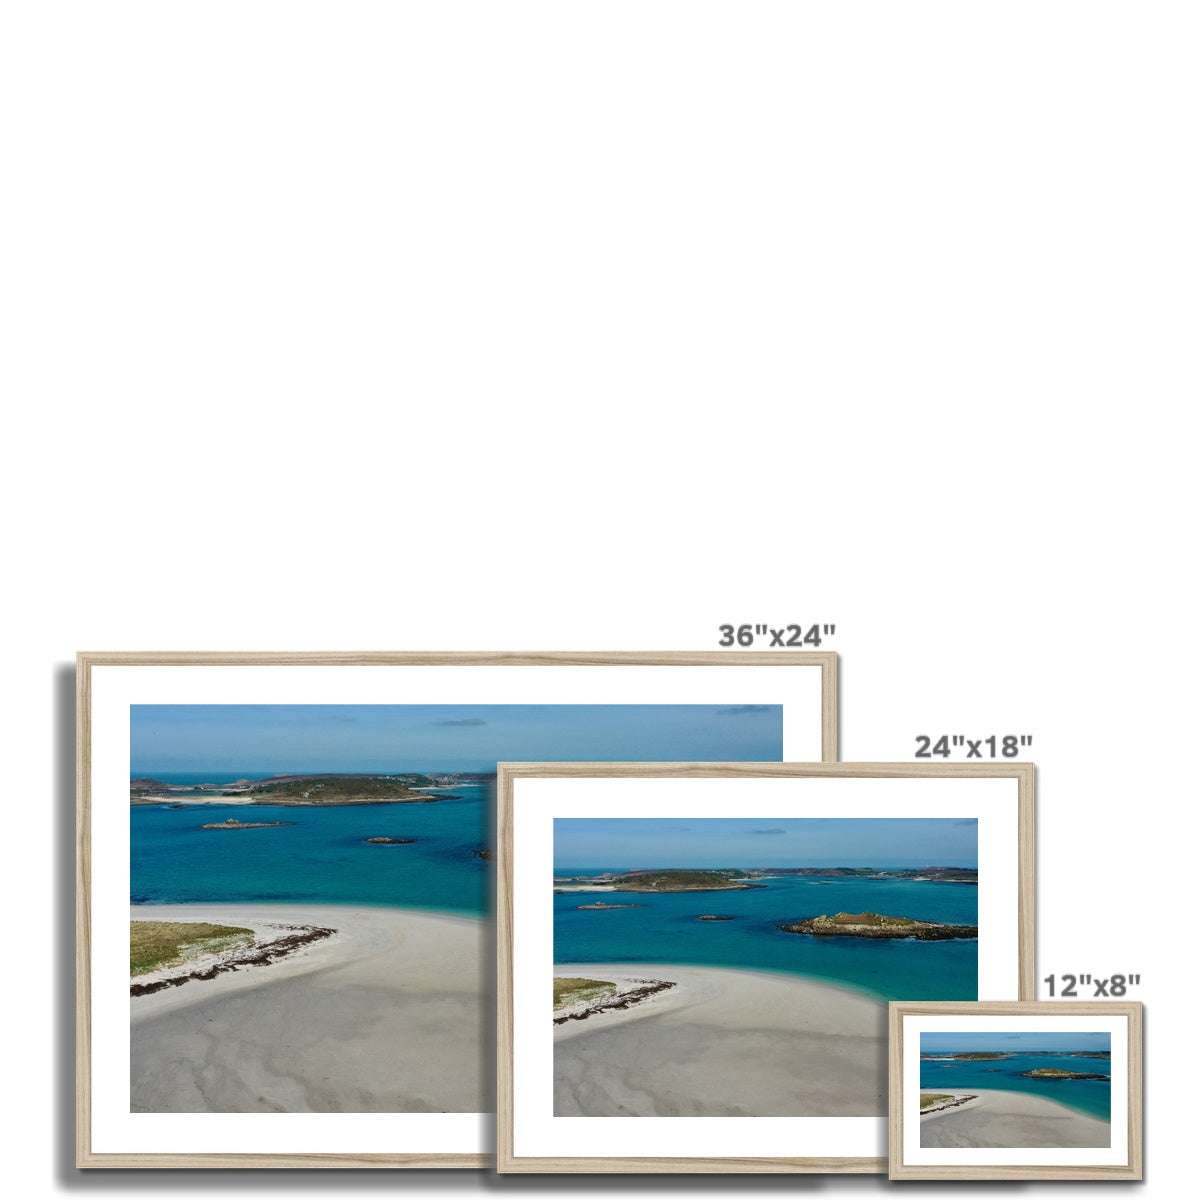 sampson sand bar frame sizes